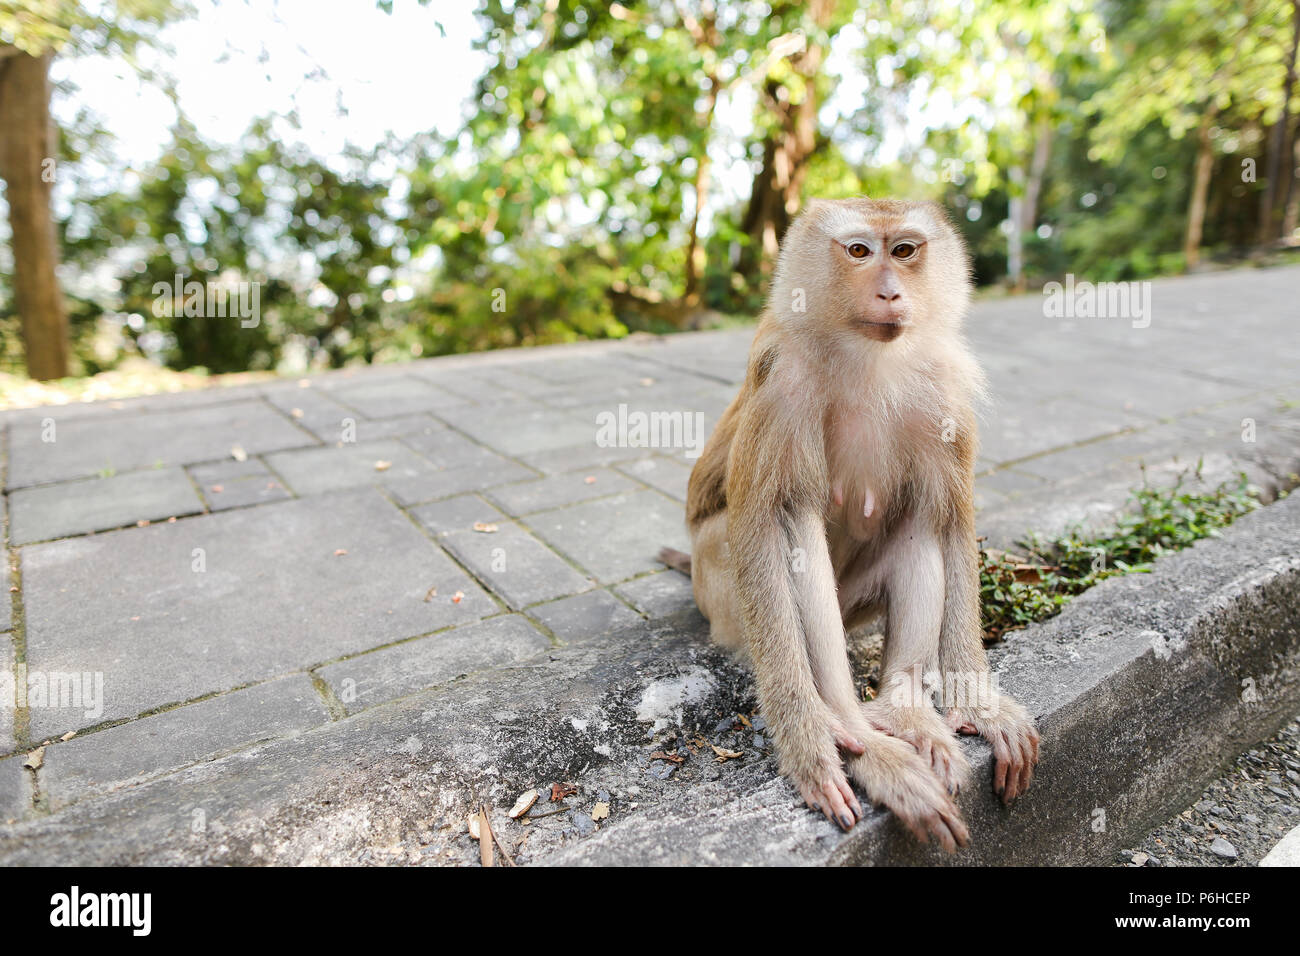 Peu cute macaco assis sur la route en Inde. Banque D'Images